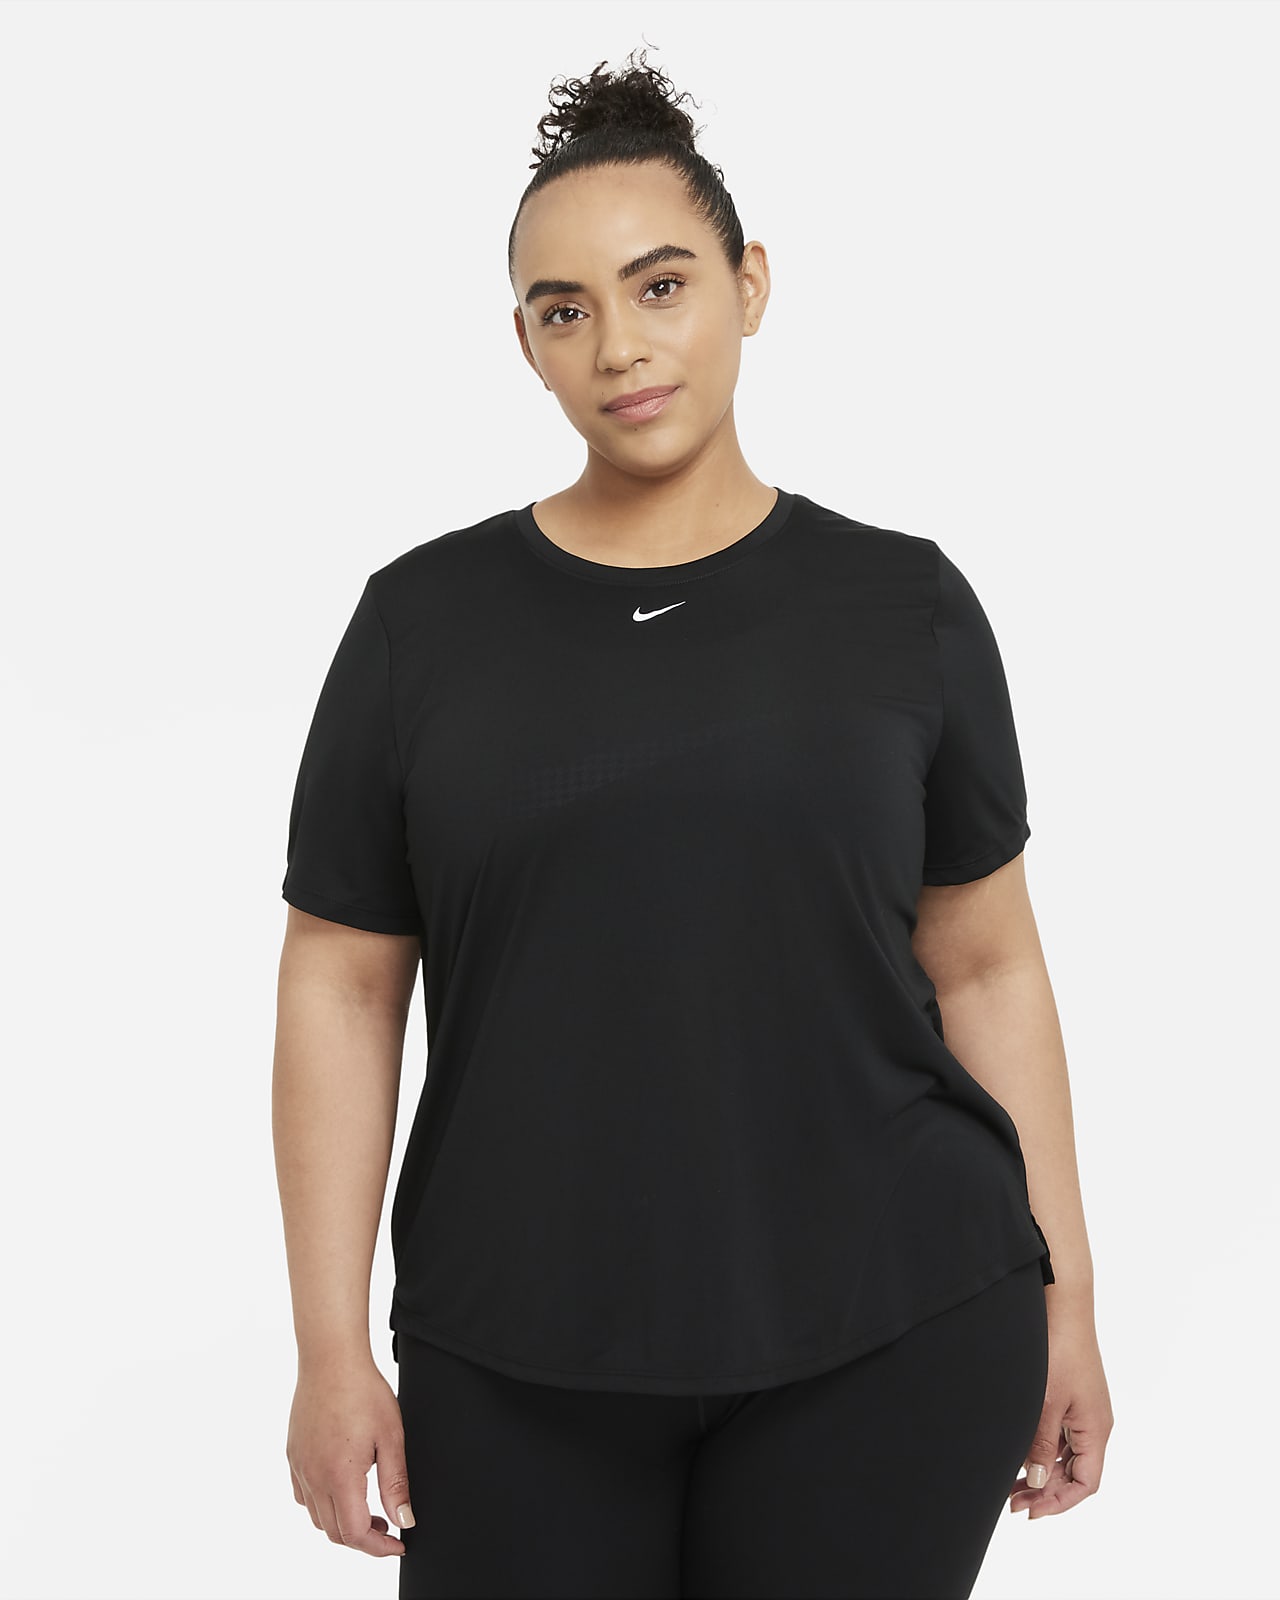 Haut à manches courtes et coupe standard Nike Dri-FIT One pour Femme (grande taille)